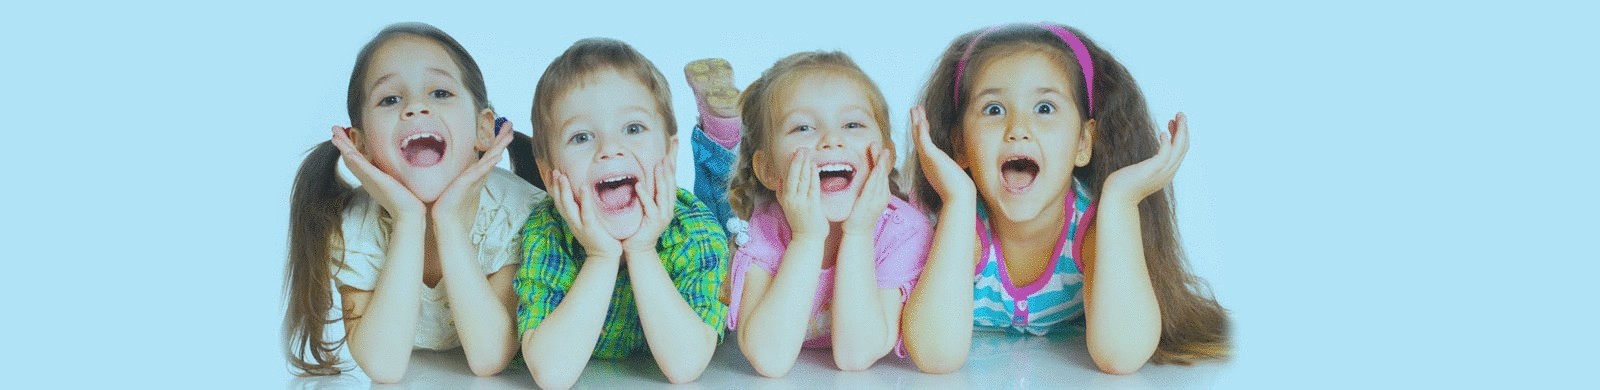 60 способов сделать ребенка счастливым